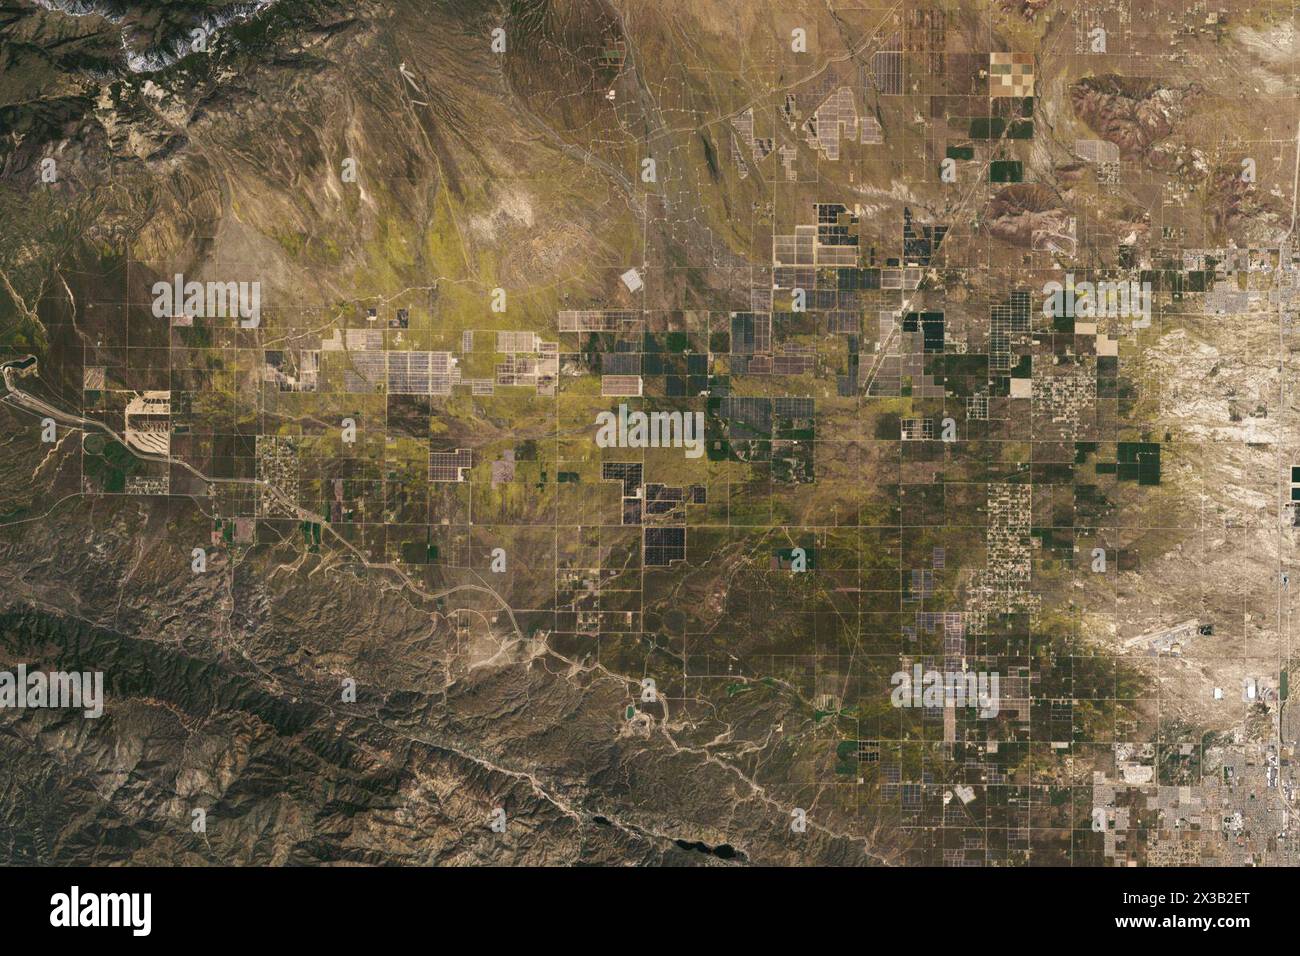 California, Stati Uniti. 9 aprile 2024. Vicino alla punta occidentale del deserto del Mojave e a pochi chilometri a ovest del centro di ricerca Armstrong Flight Research della NASA, campi di fiori selvatici hanno dipinto il paesaggio di giallo nella primavera del 2024. Il 9 aprile, gli oli (Operational Land Imager) sul satellite Landsat 8 acquisirono questa immagine di campi di fiori selvatici gialli che ricoprono Antelope Valley tra parchi solari ed eolici. Il giorno dopo l'acquisizione dell'immagine, l'Antelope Valley California Poppy Reserve riferì che i fiori selvatici stavano "spuntando", ma i famosi papaveri della regione non lo erano. I Rangers della riserva hanno detto che hanno visto anche molto Foto Stock